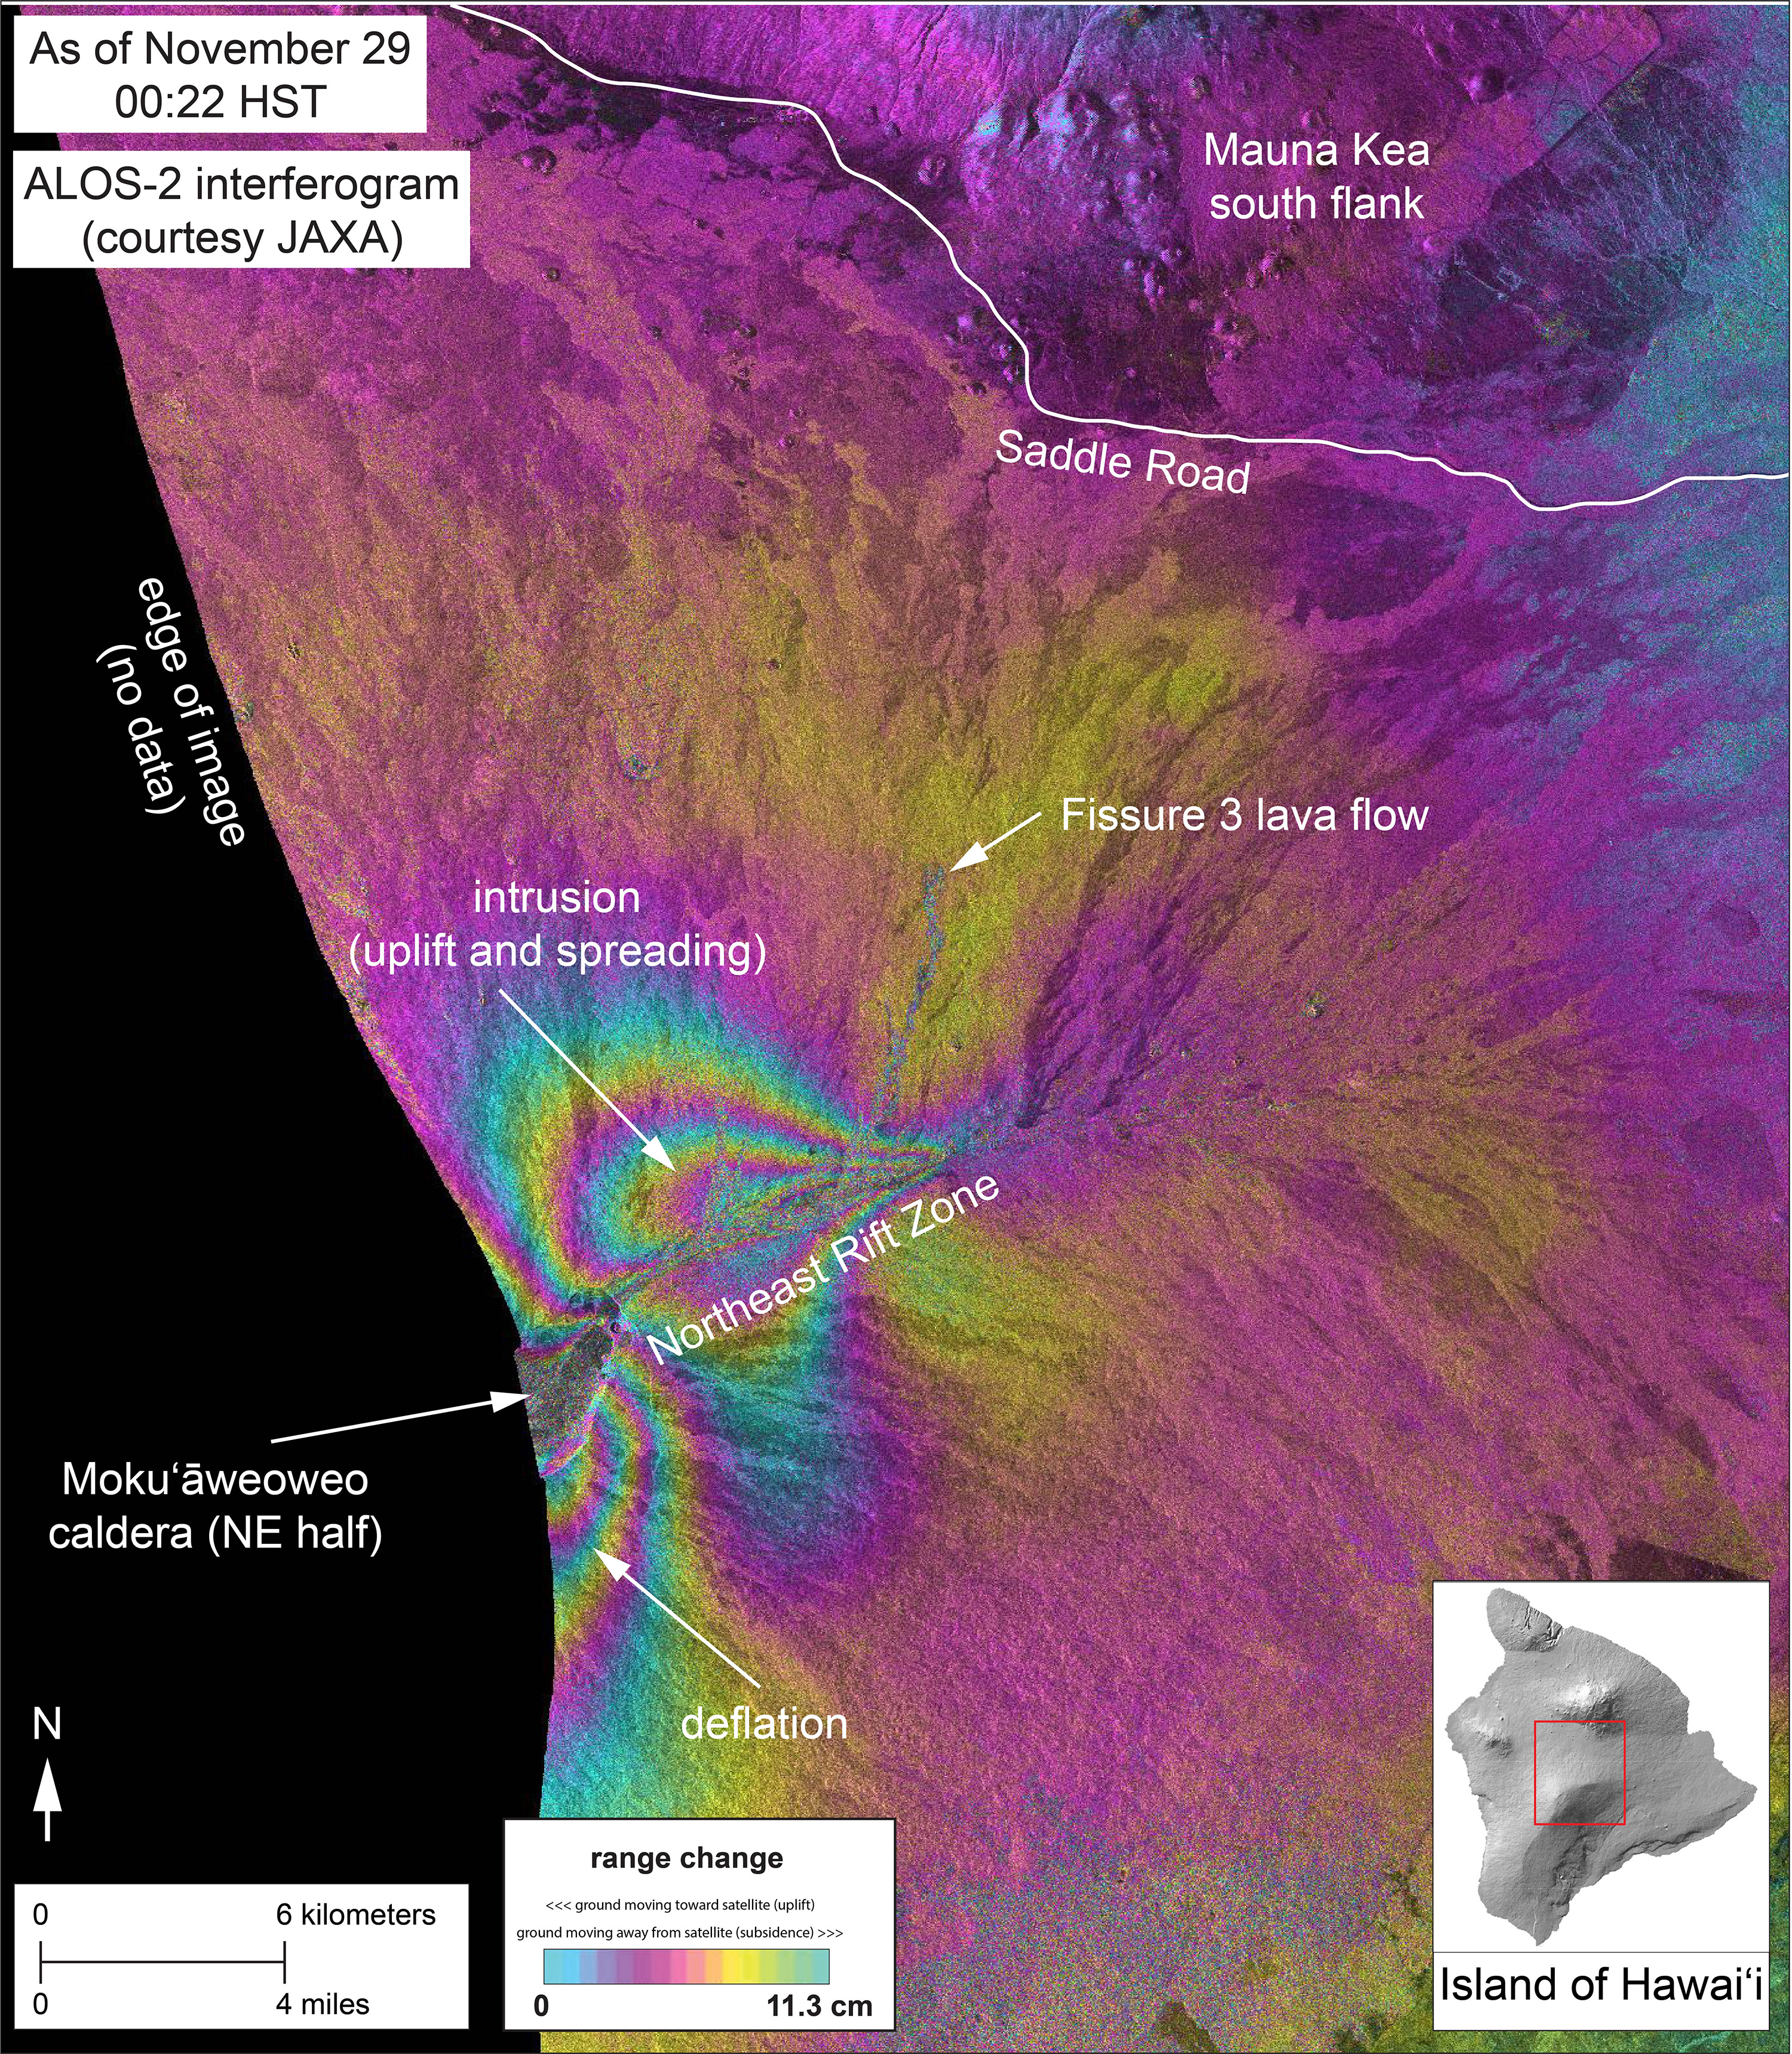 Mauna Loa InSAR map from 29 Nov (image: JAXA -Japan Aerospace Exploration Agency)